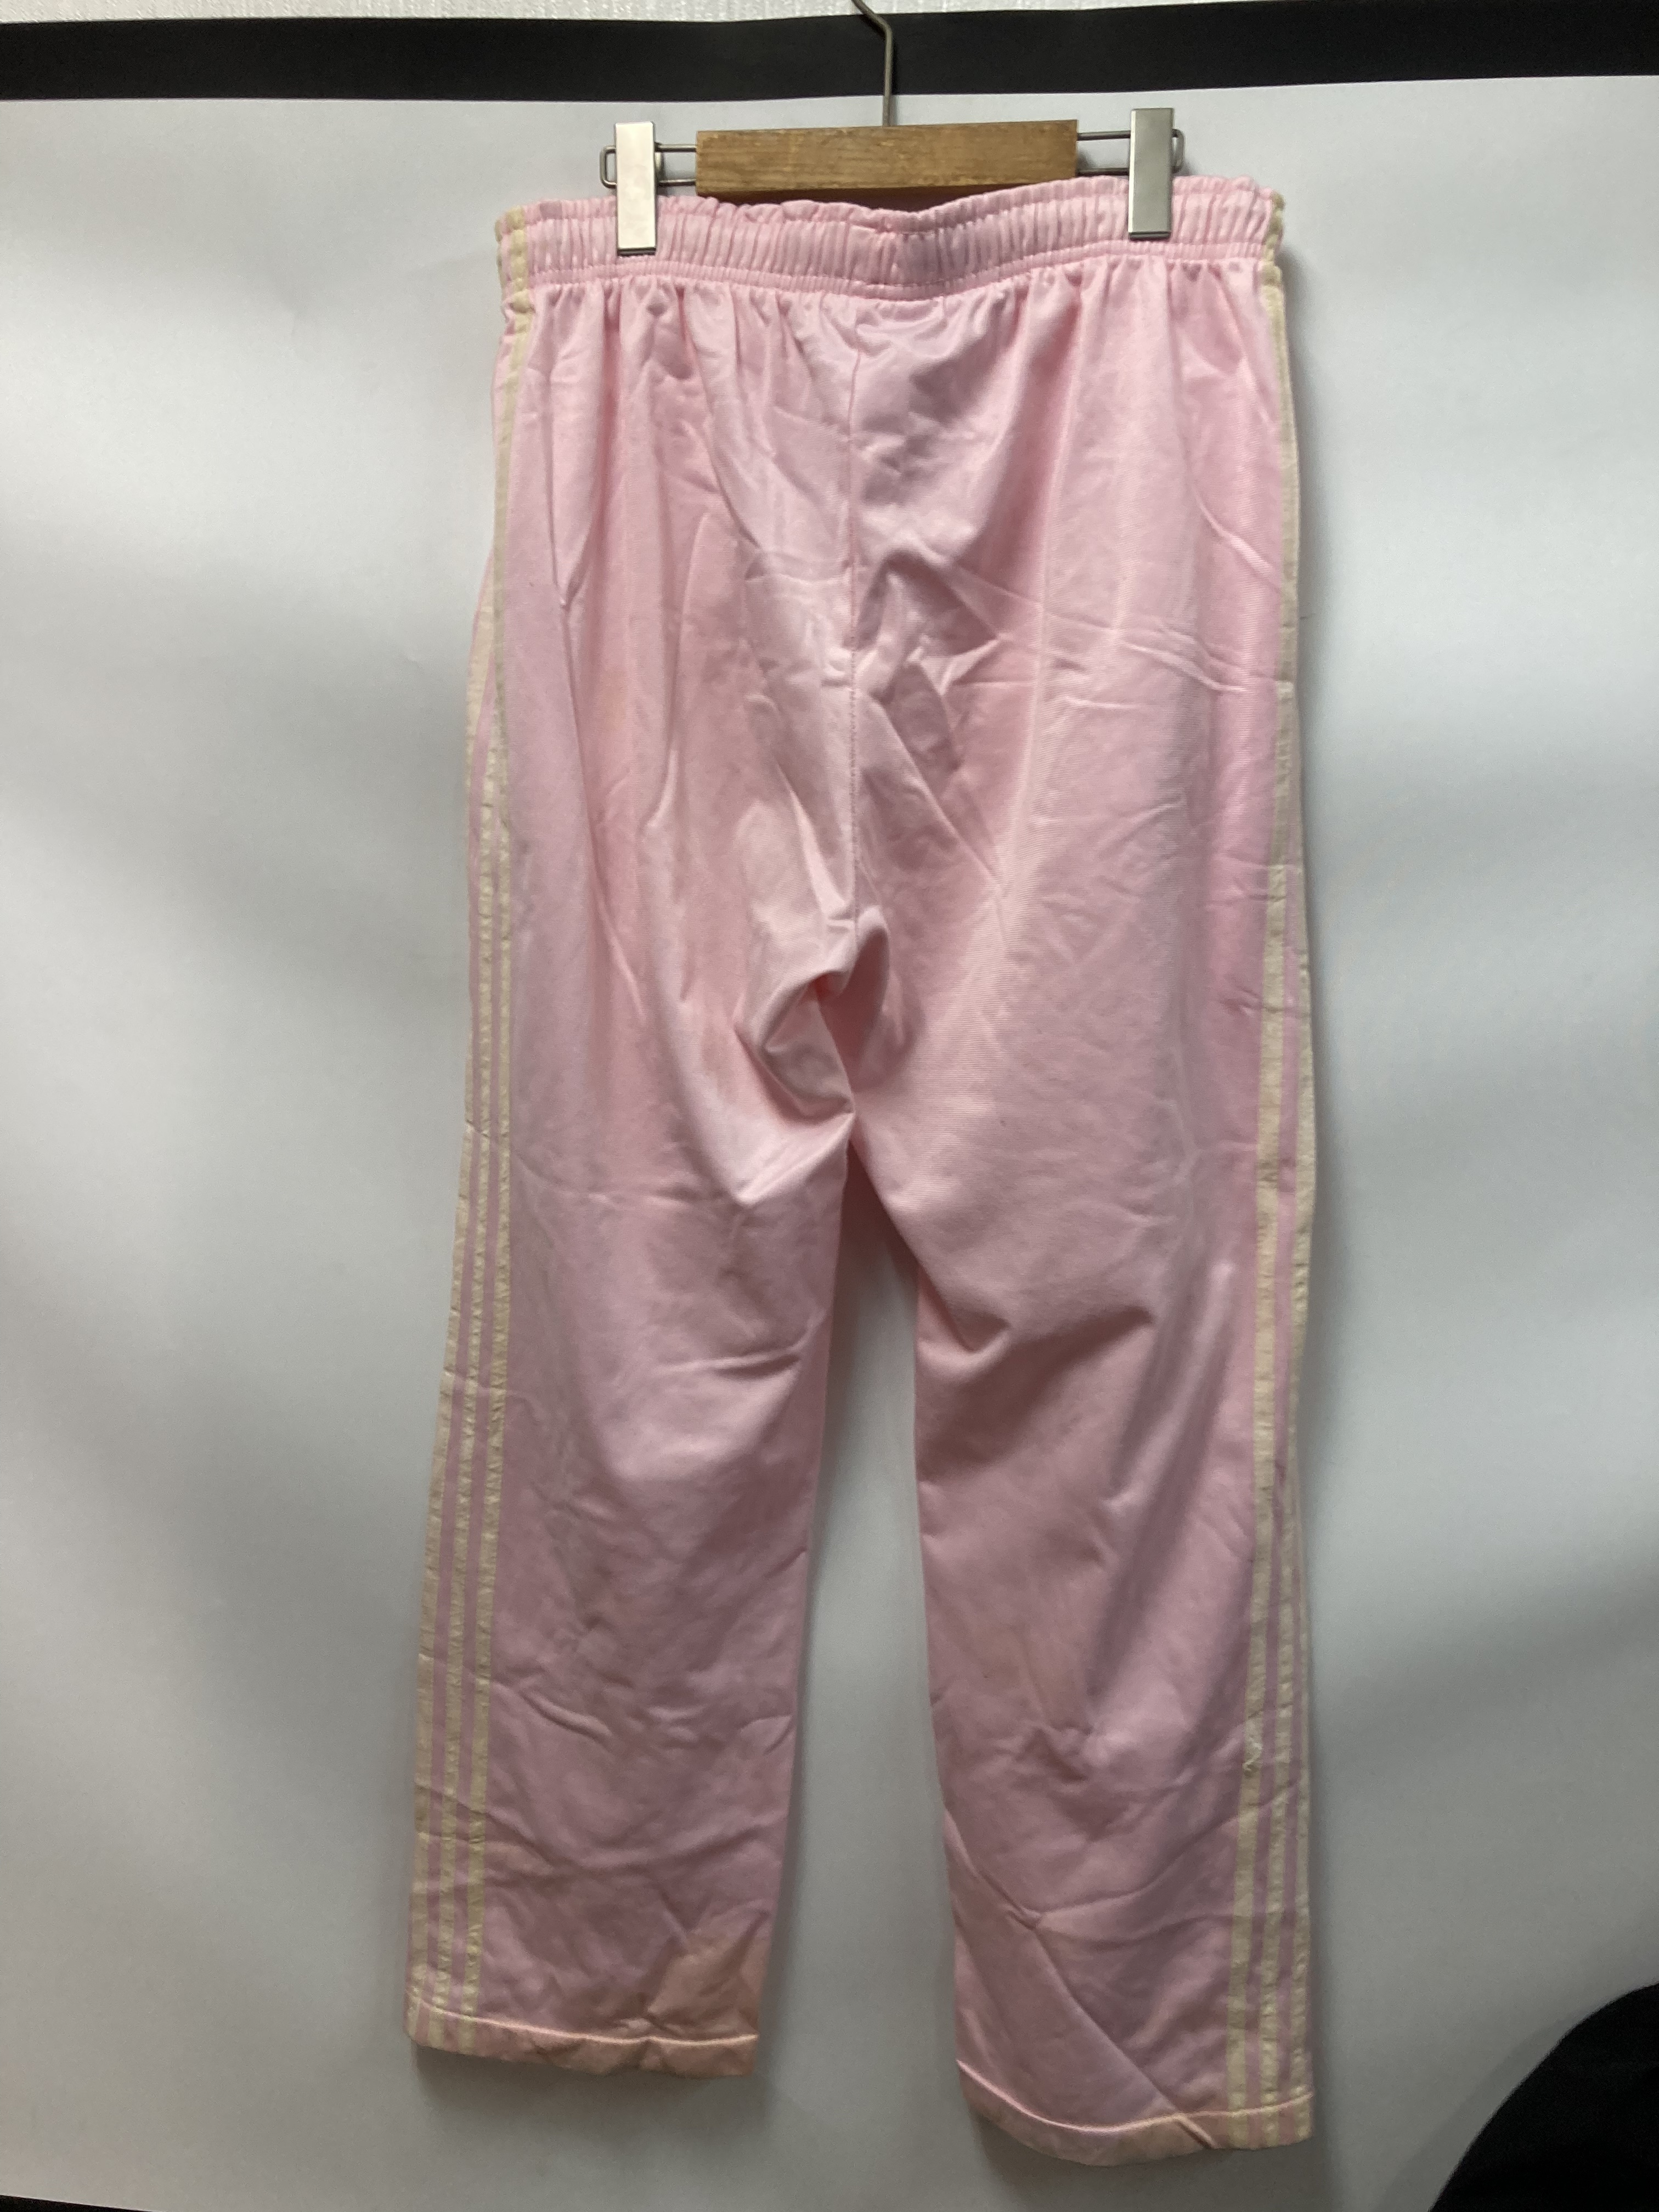 新品本物保証00s adidas vtg ジャージ パンツ ピンク オリジナルス デサント パンツ